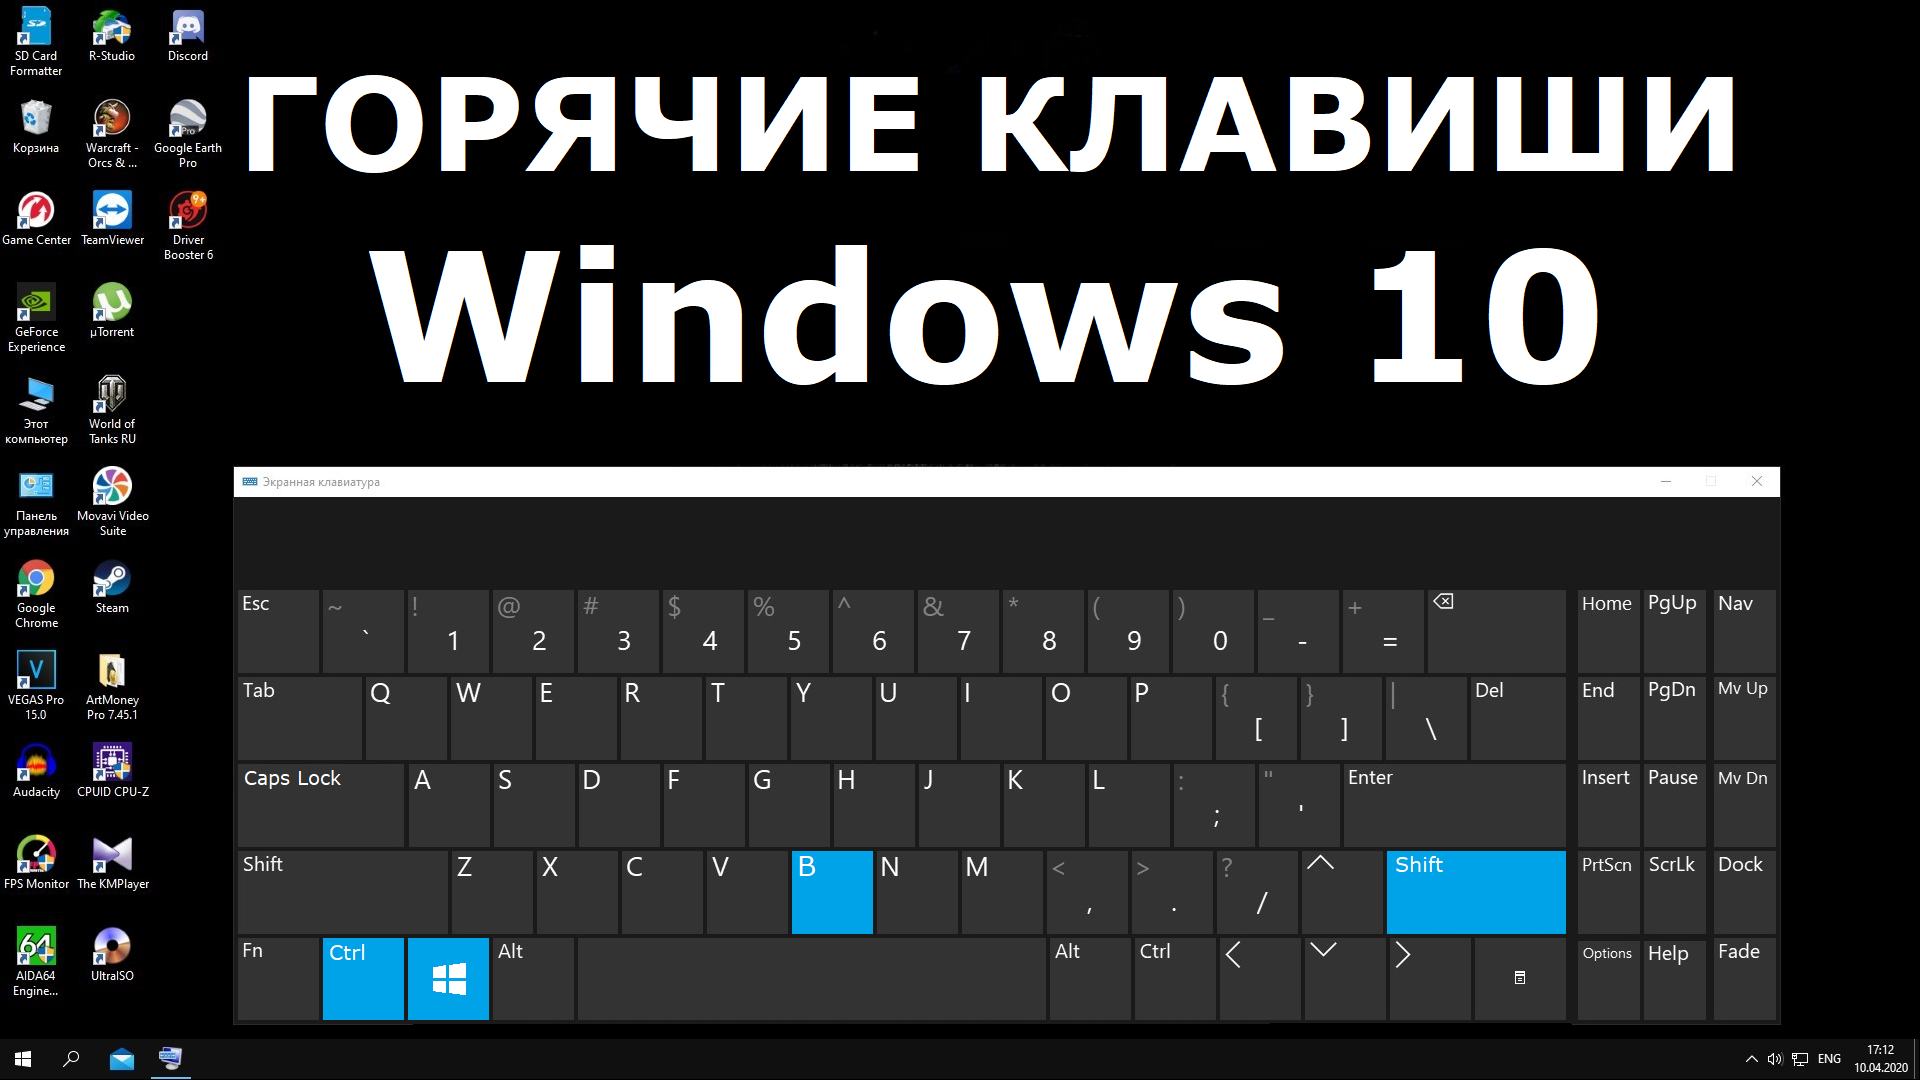 Нажми windows клавиши windows